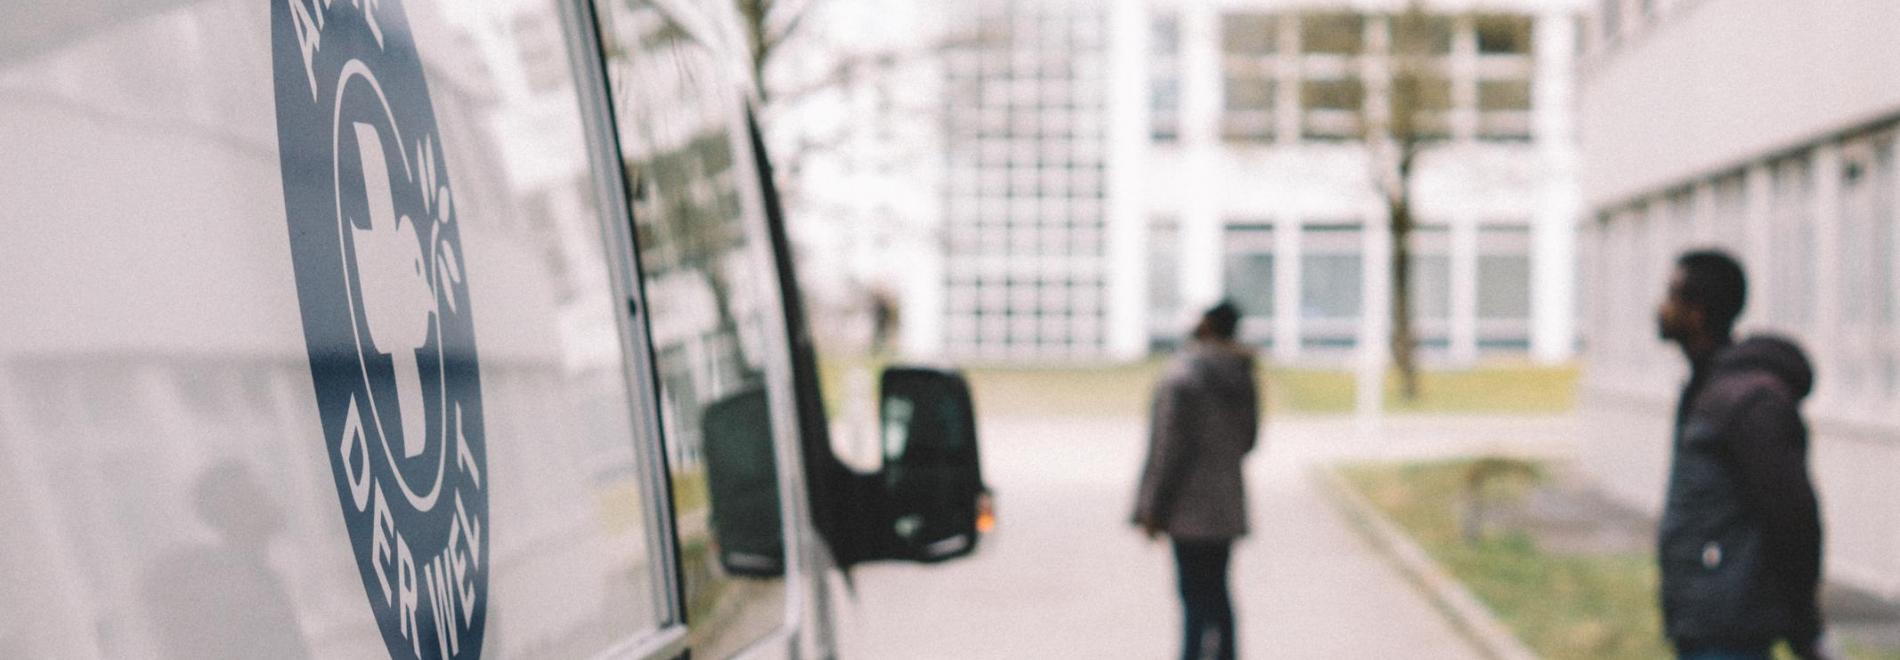 Ärzte der Welt-Bus vor einer Gemeinschaftsunterkunft für Flüchtlinge in München